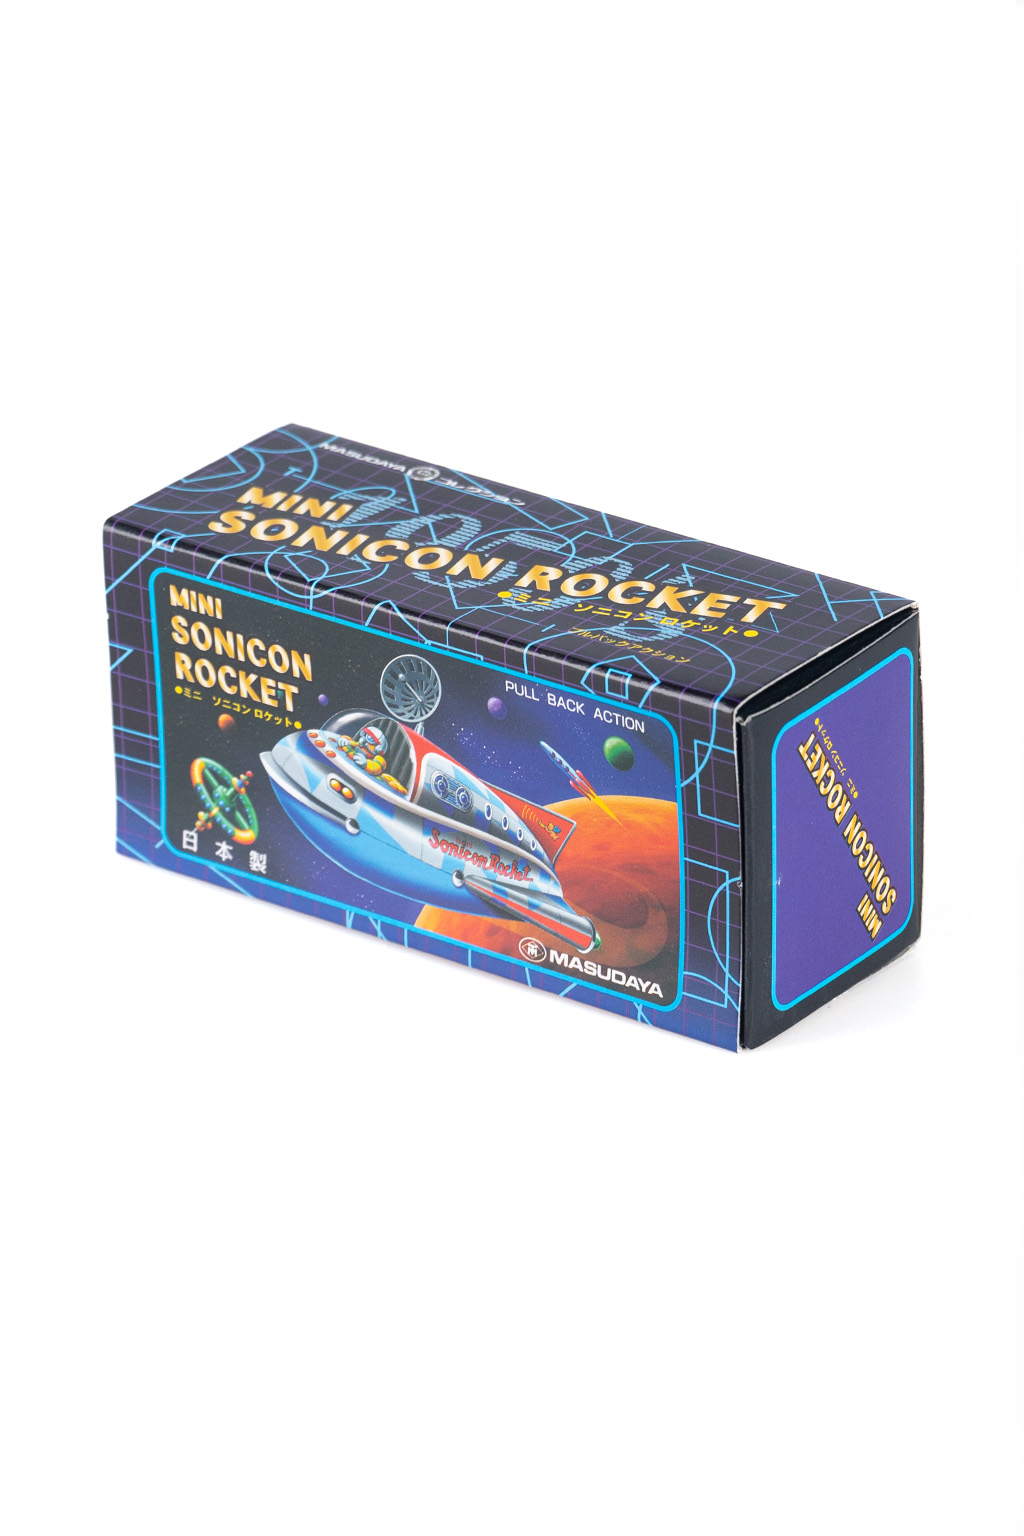 Masudaya Toy Company Retro Mini Sonicon Rocket